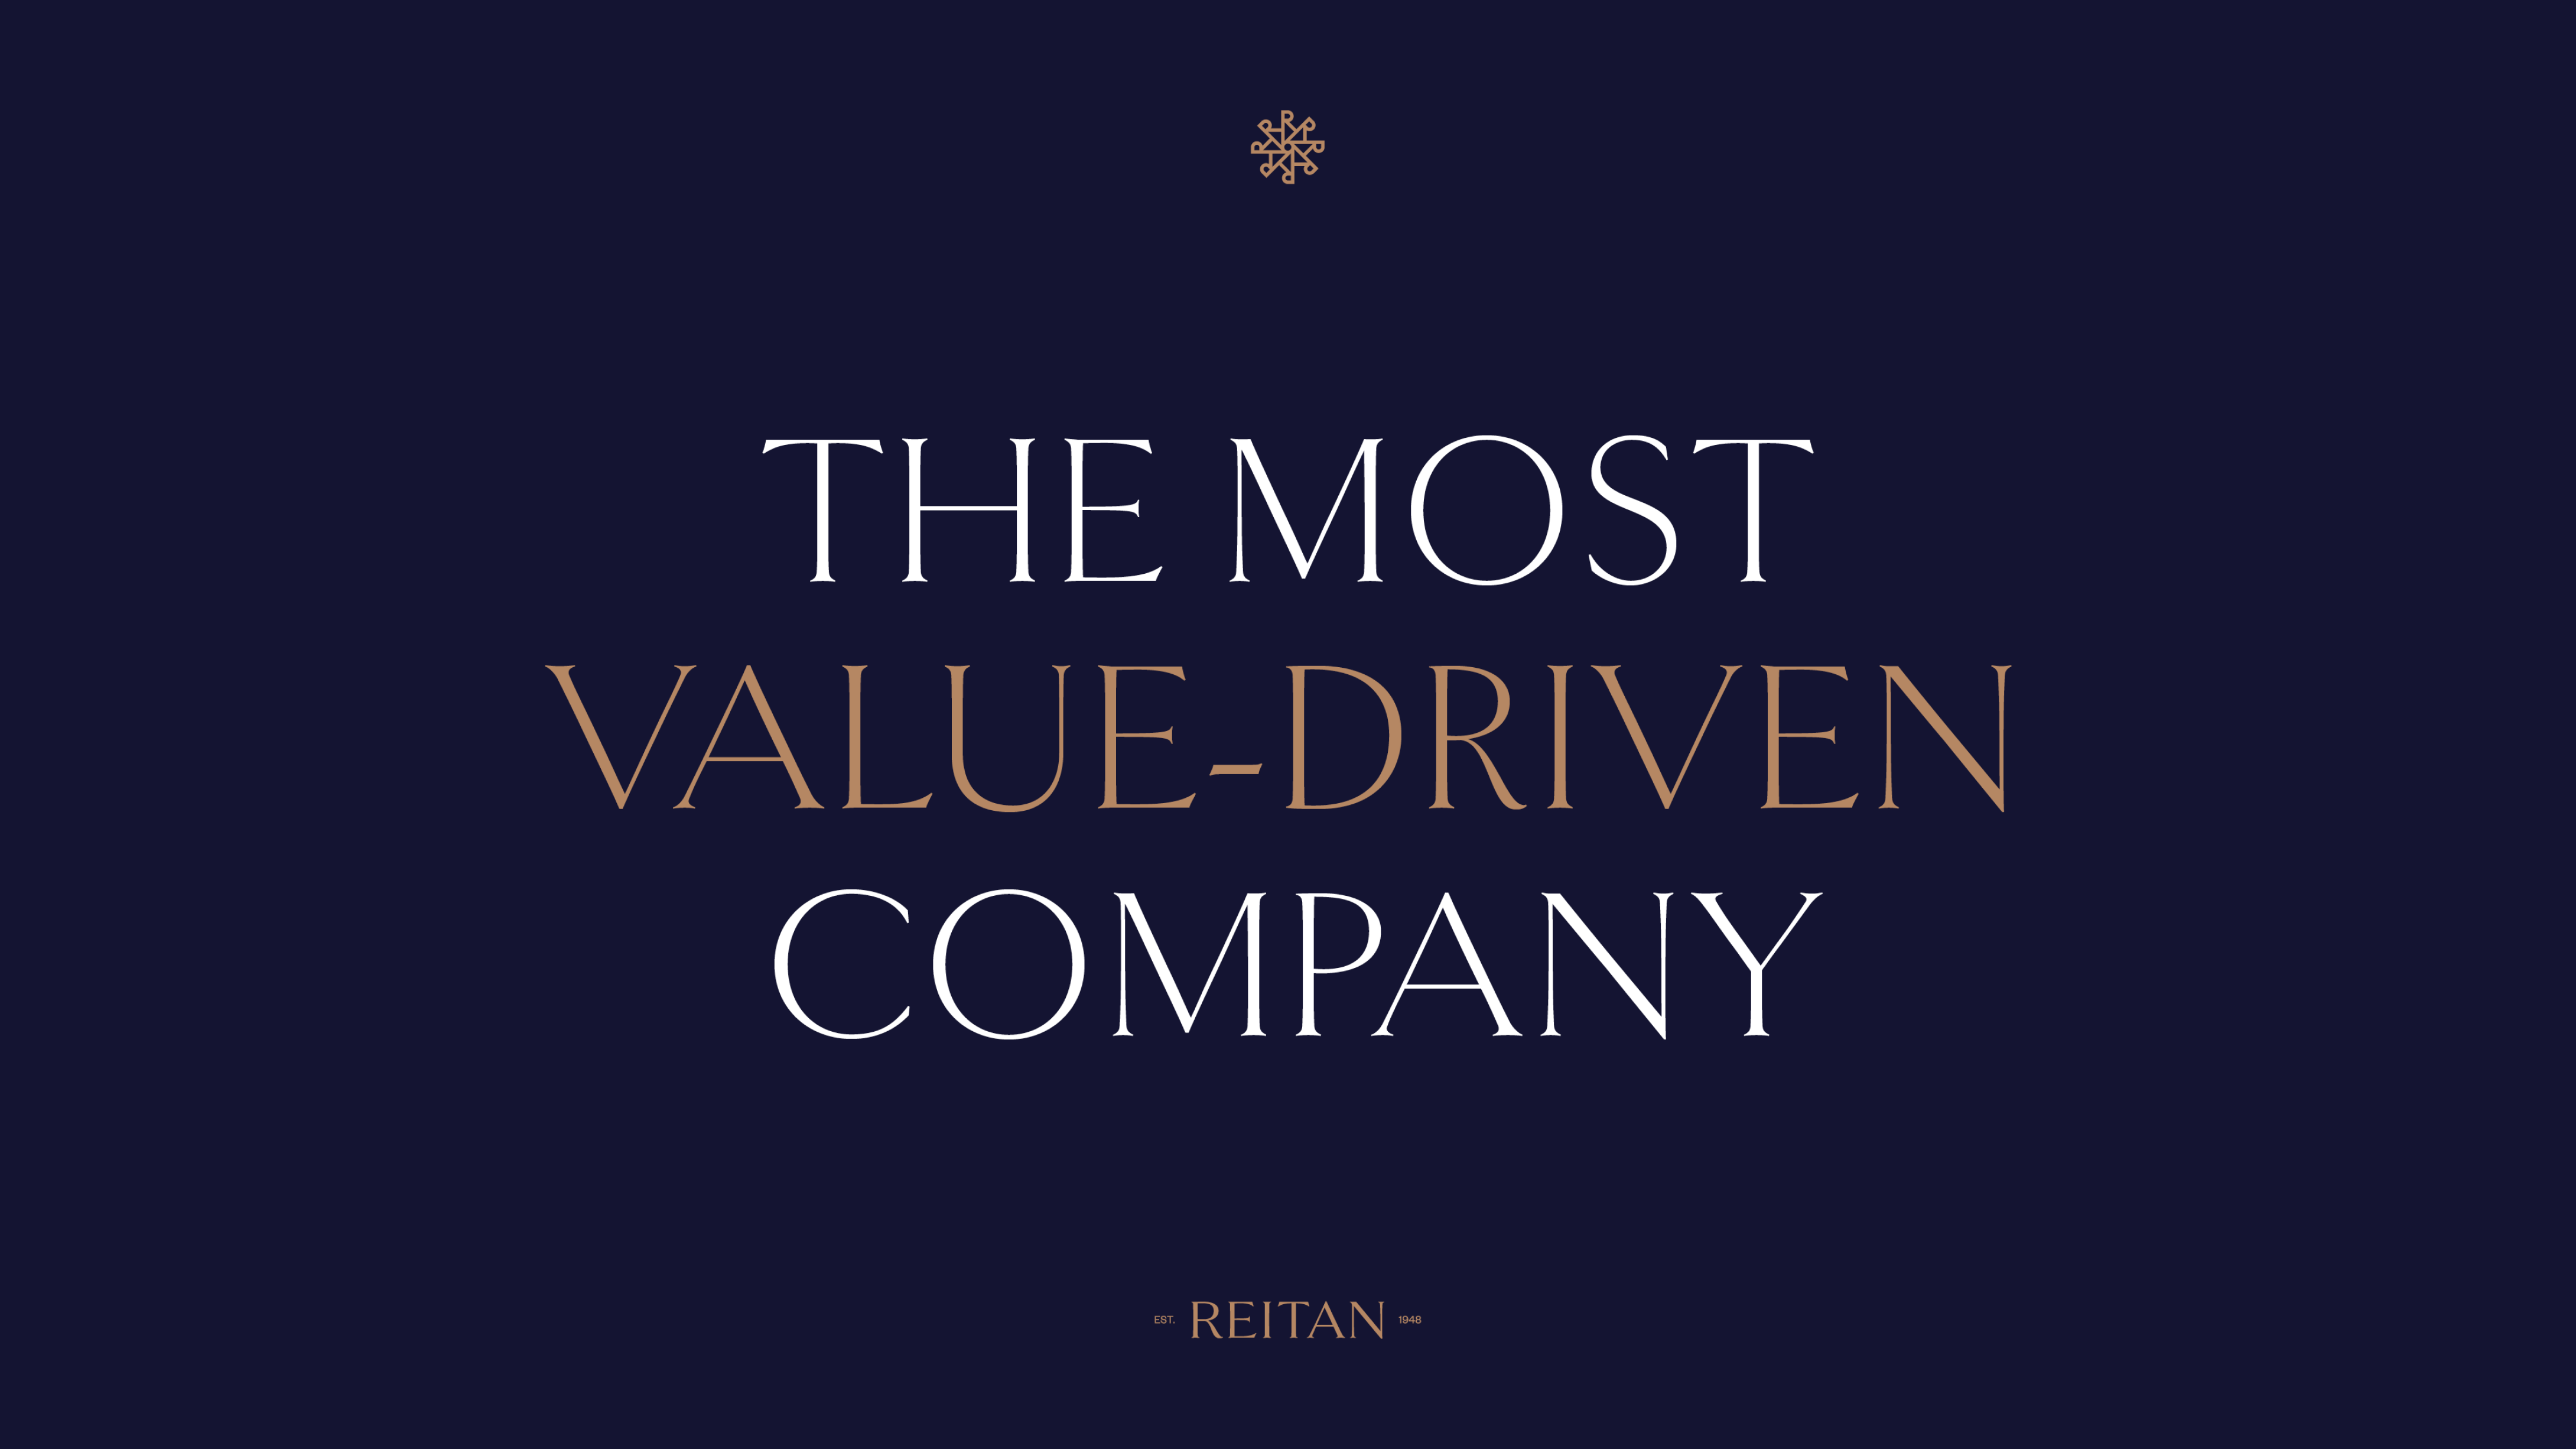 Reitan tagline: The most value-driven company